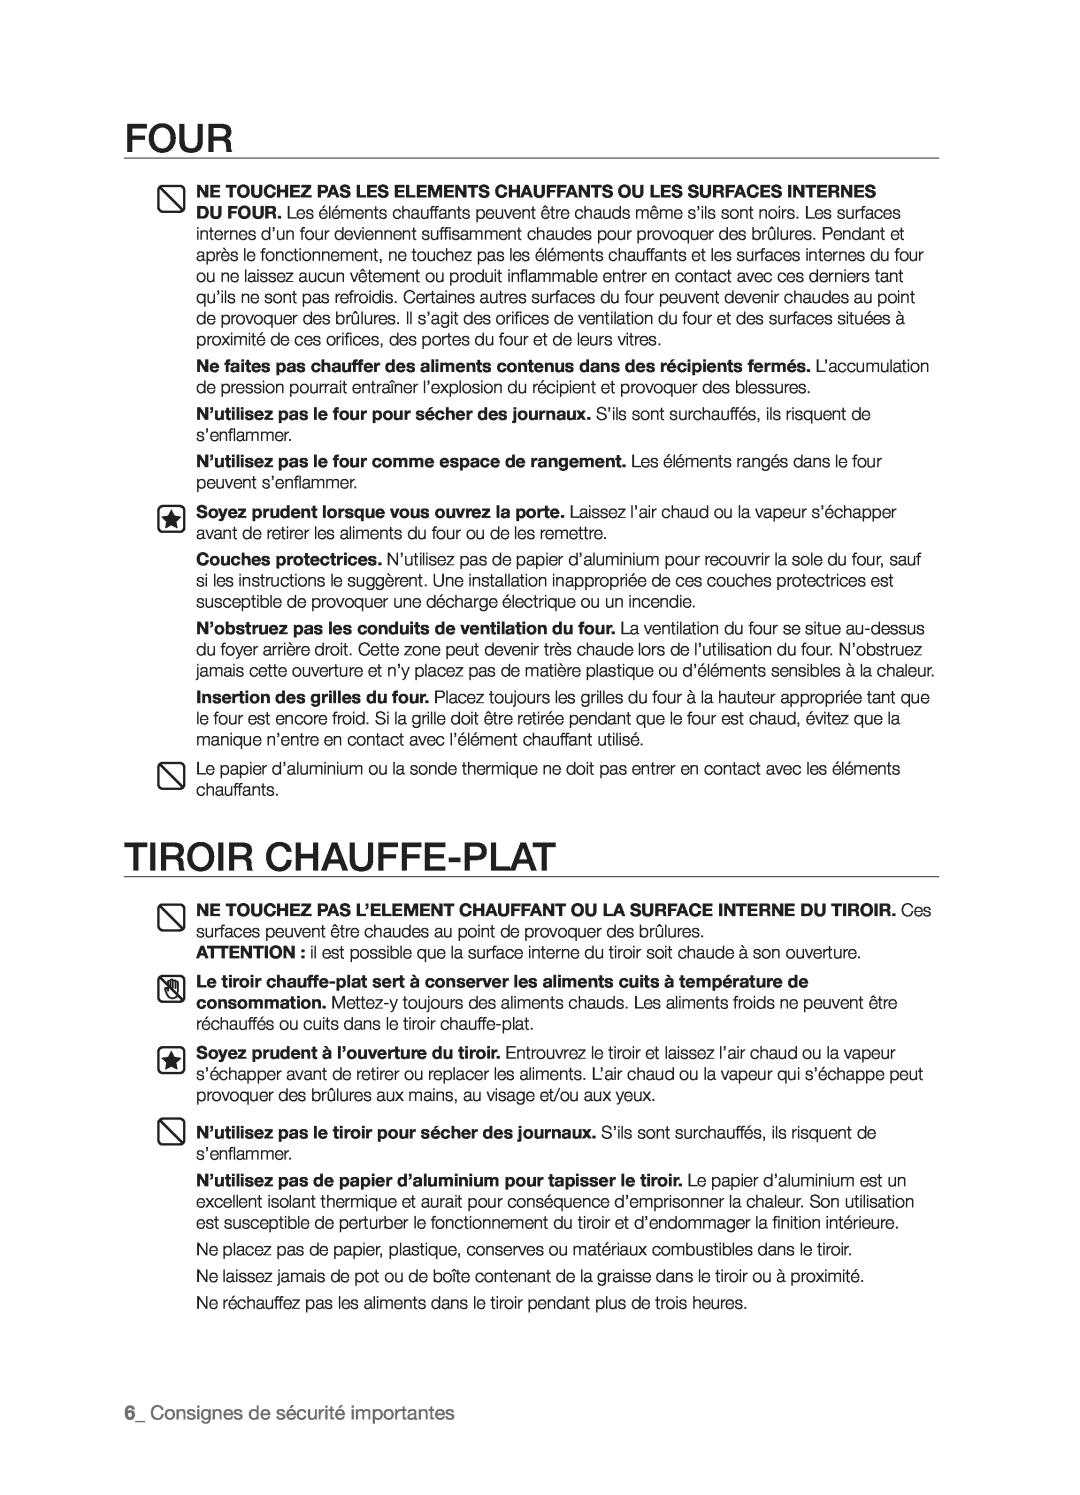 Samsung FTQ386LWX user manual Four, Tiroir Chauffe-Plat, _ Consignes de sécurité importantes 